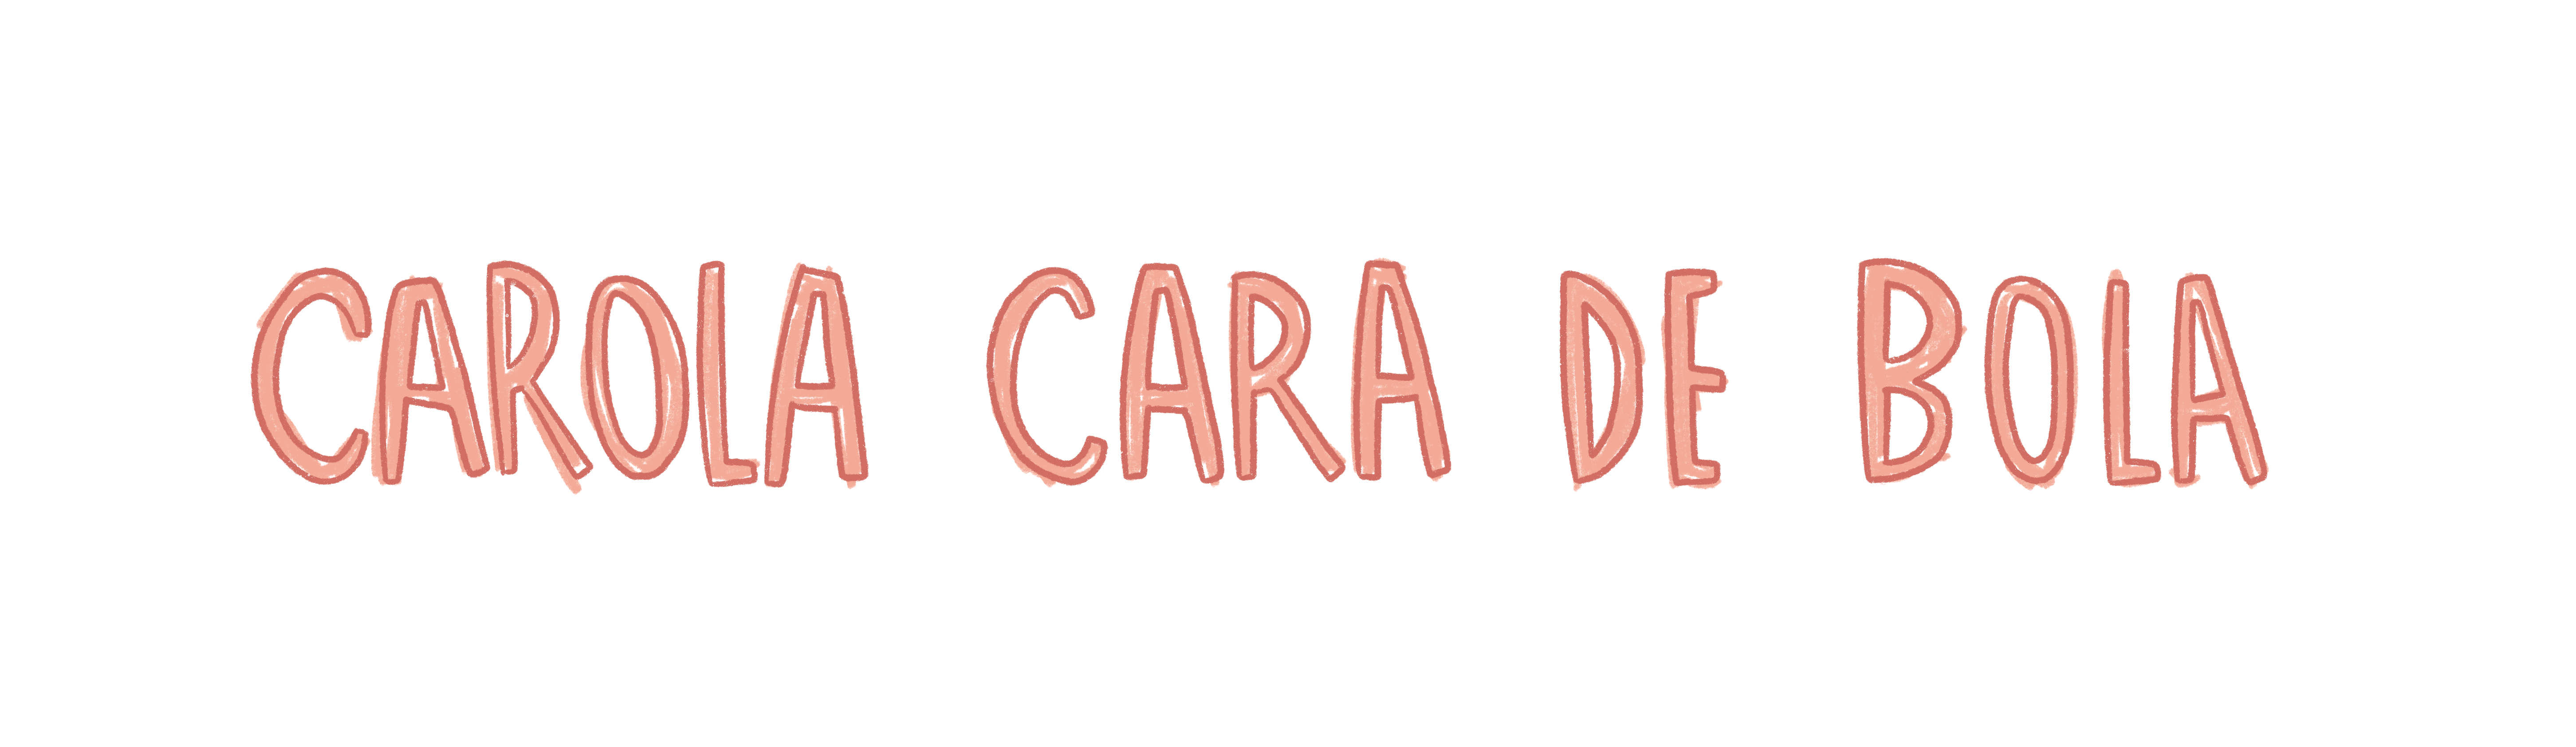 Carola_Cara_De_Bola (1)